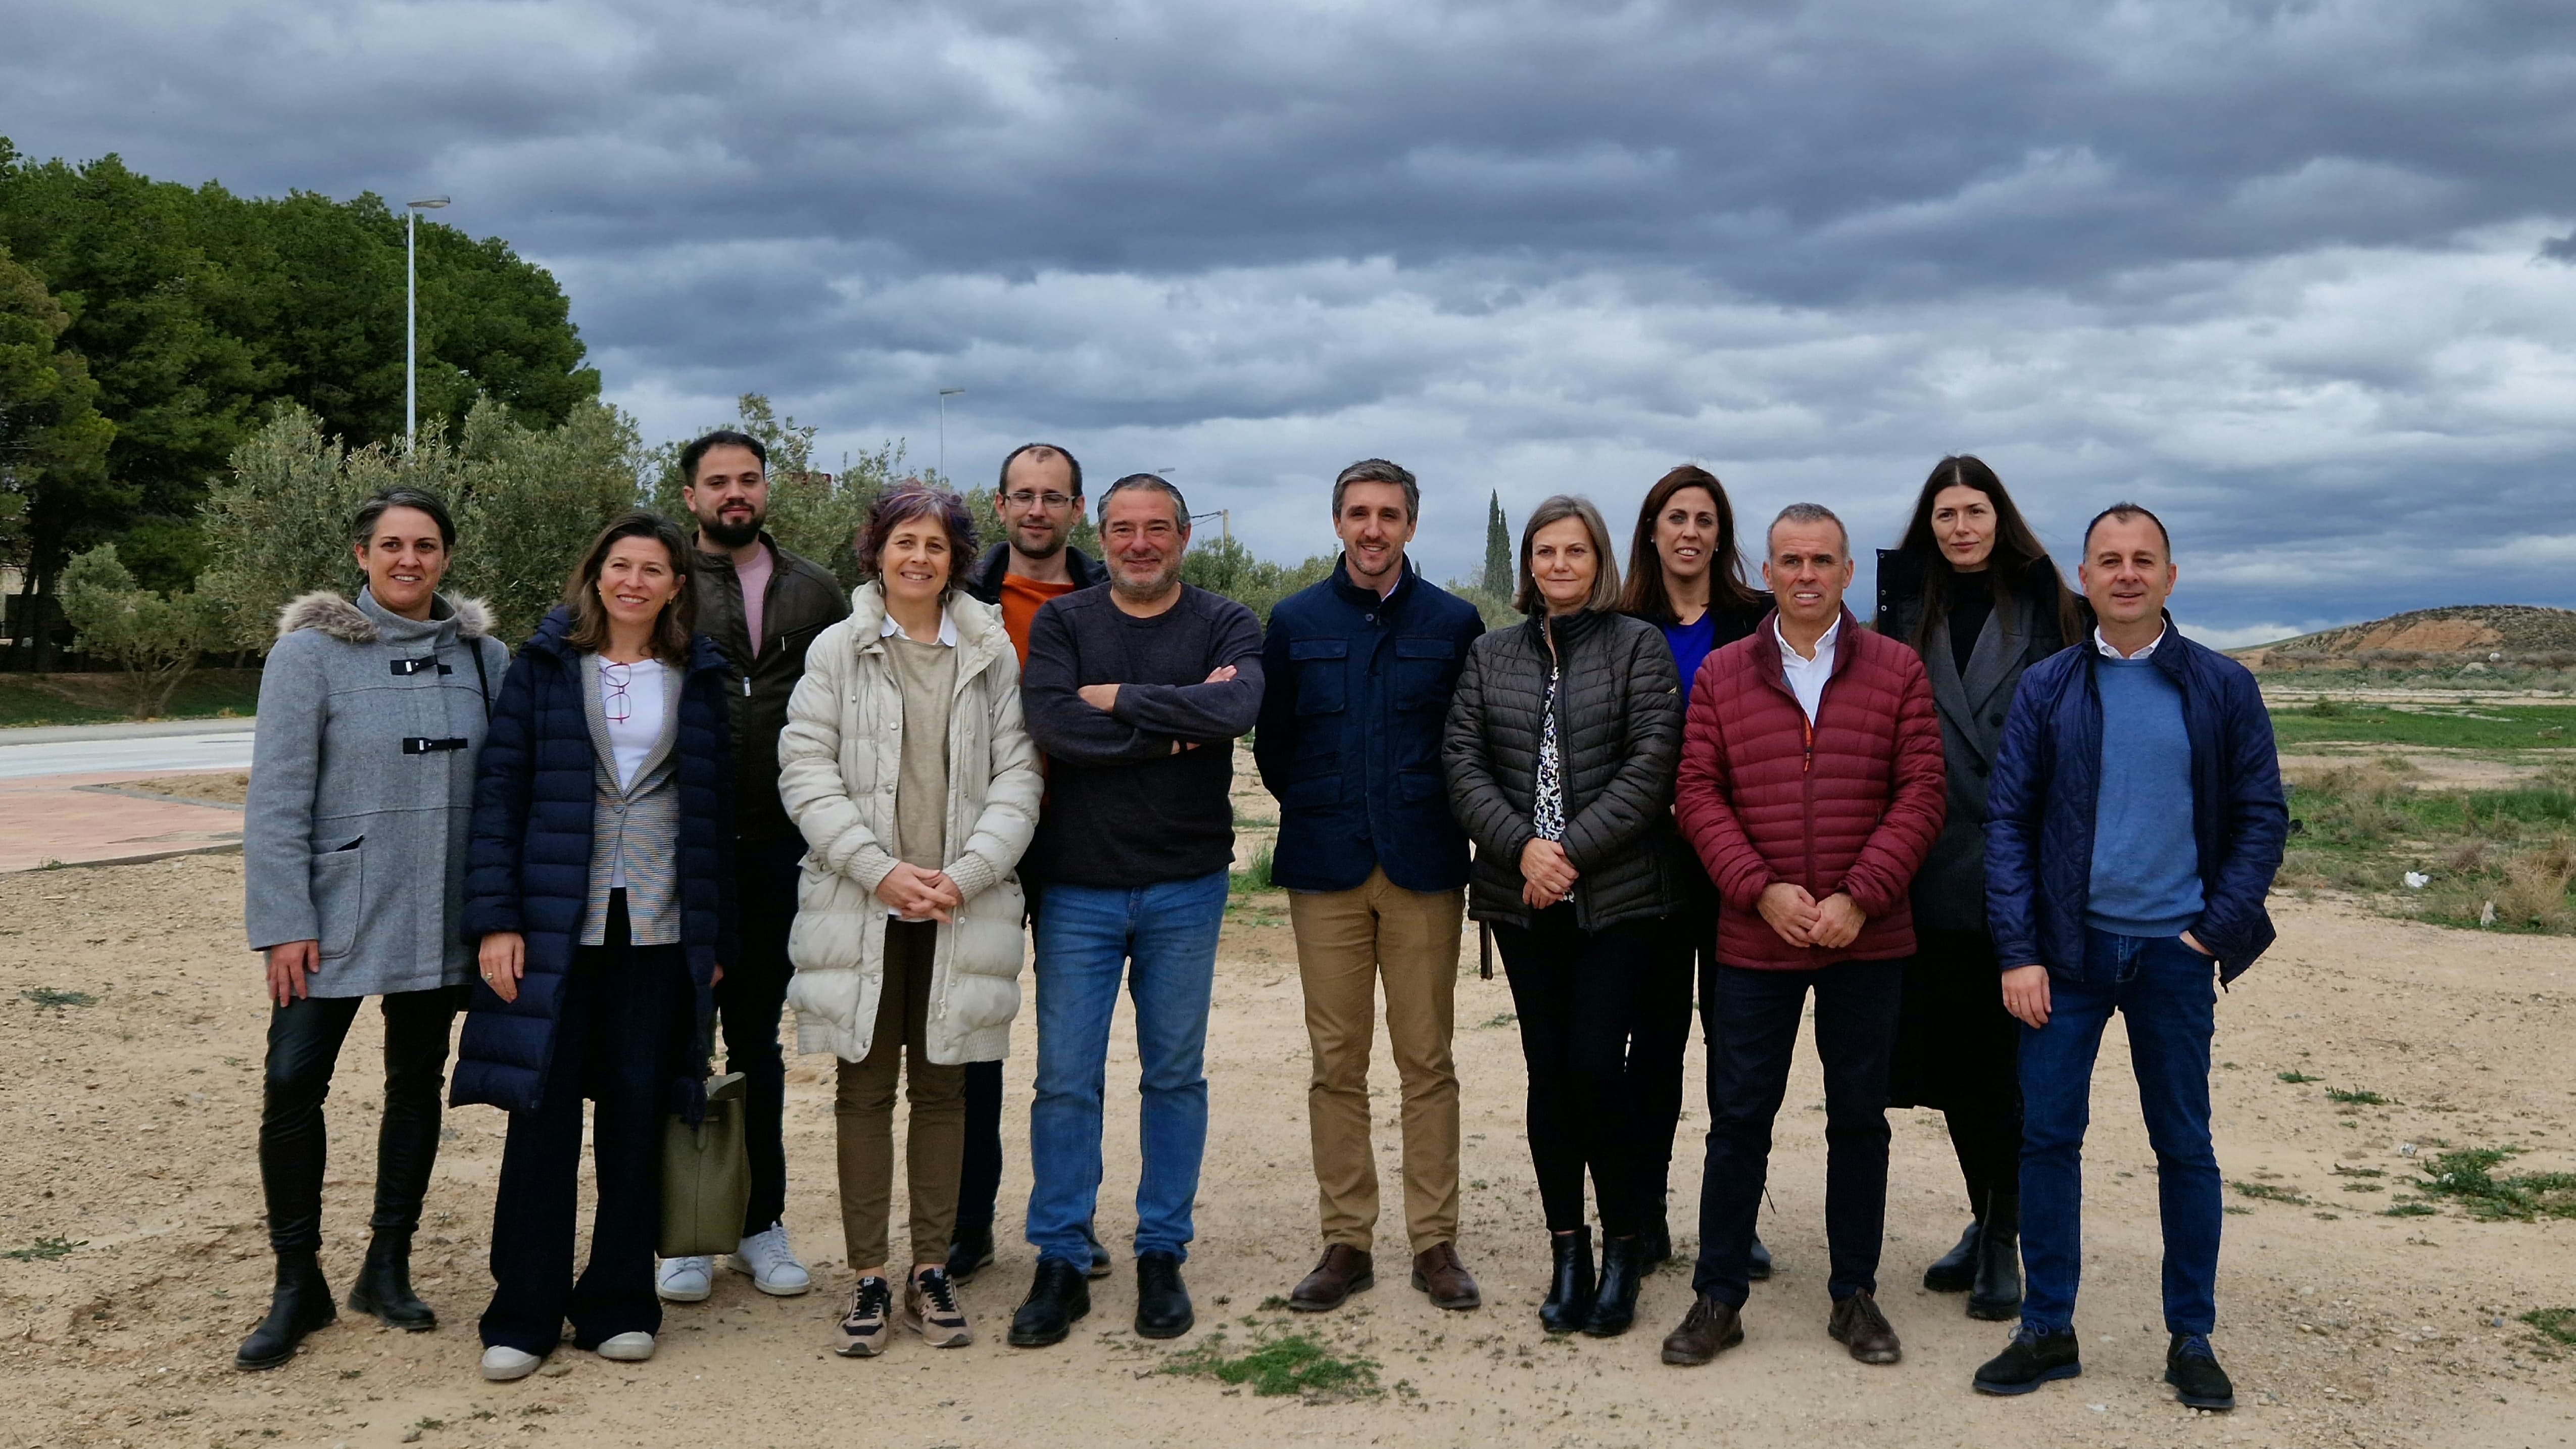 La consejera Esnaola, junto a con representantes políticos y técnicos 
implicados en el impulso de acciones de turismo sostenible en la Ribera con 
fondos europeos. 